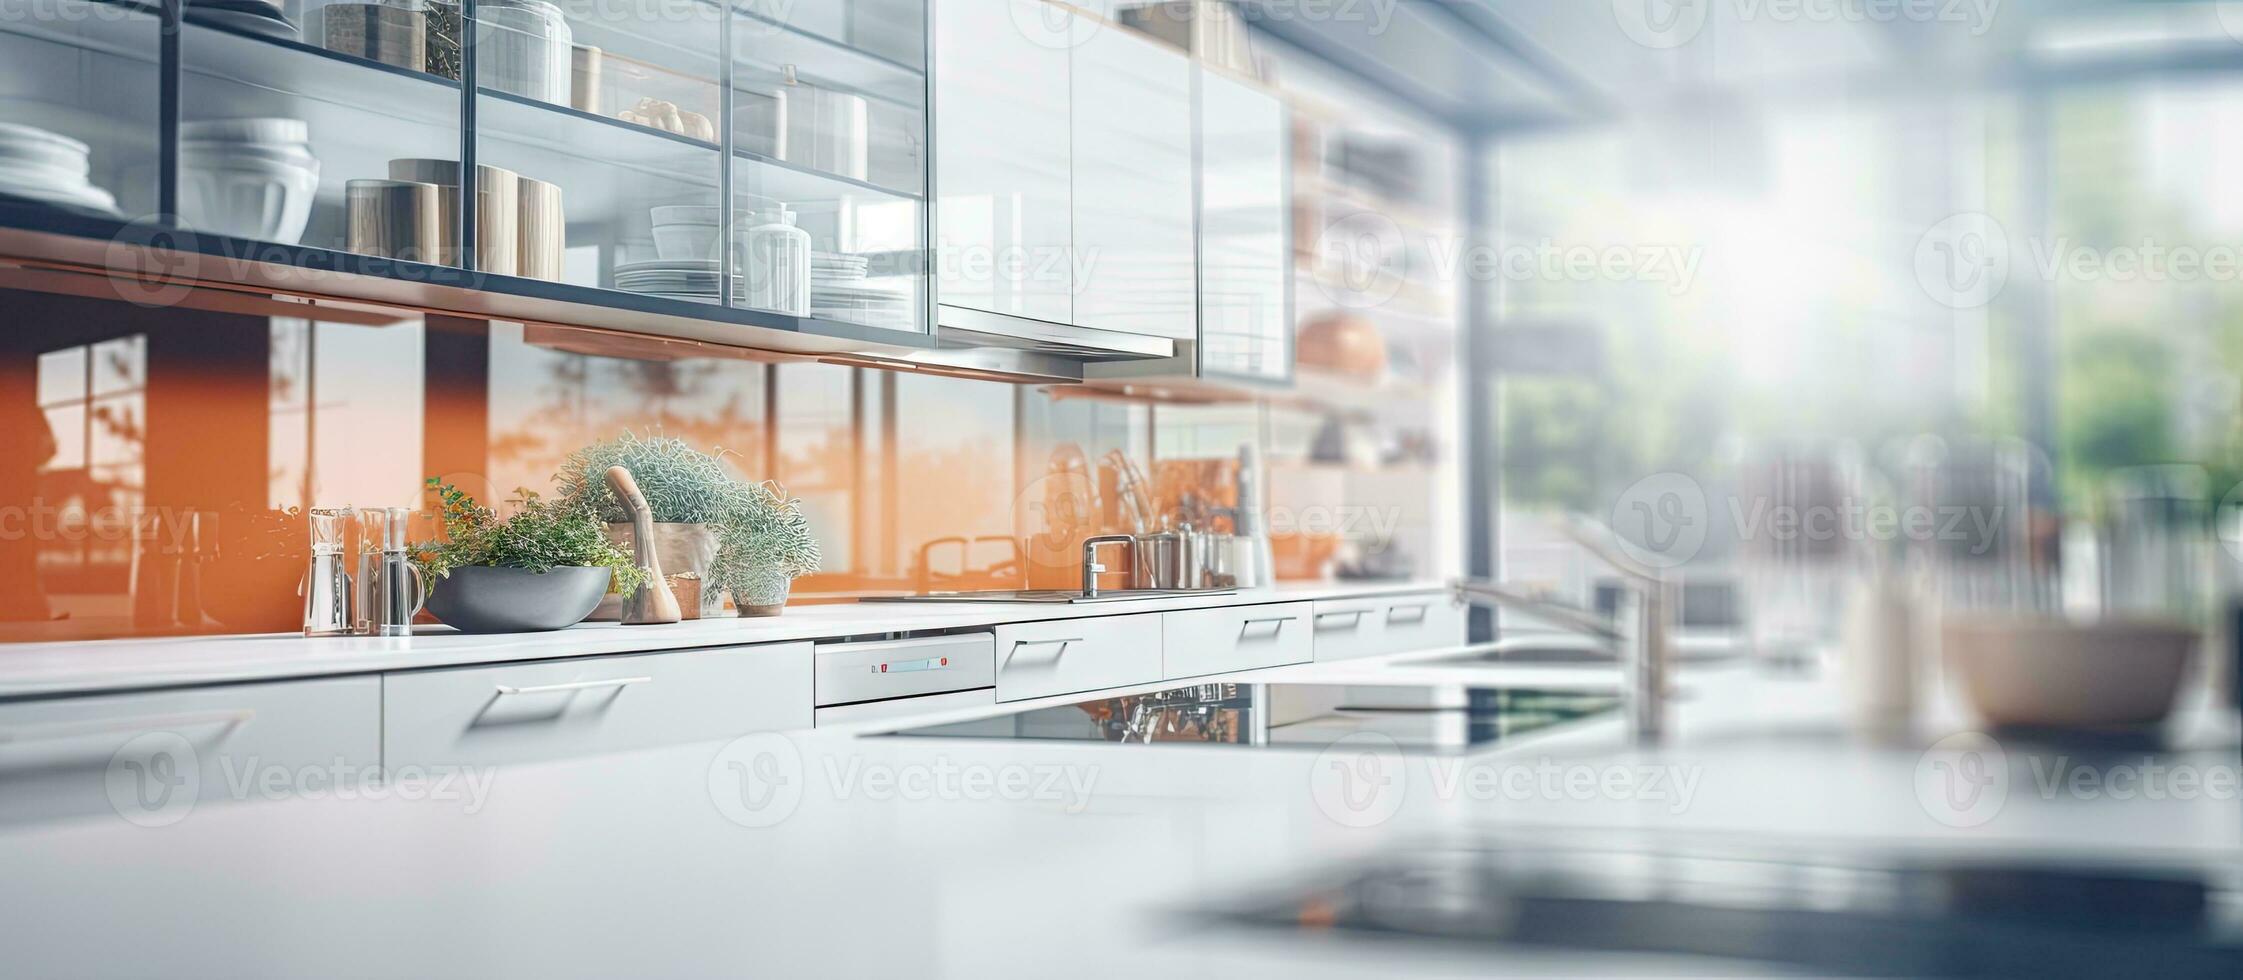 Blurred modern kitchen interior image as background photo